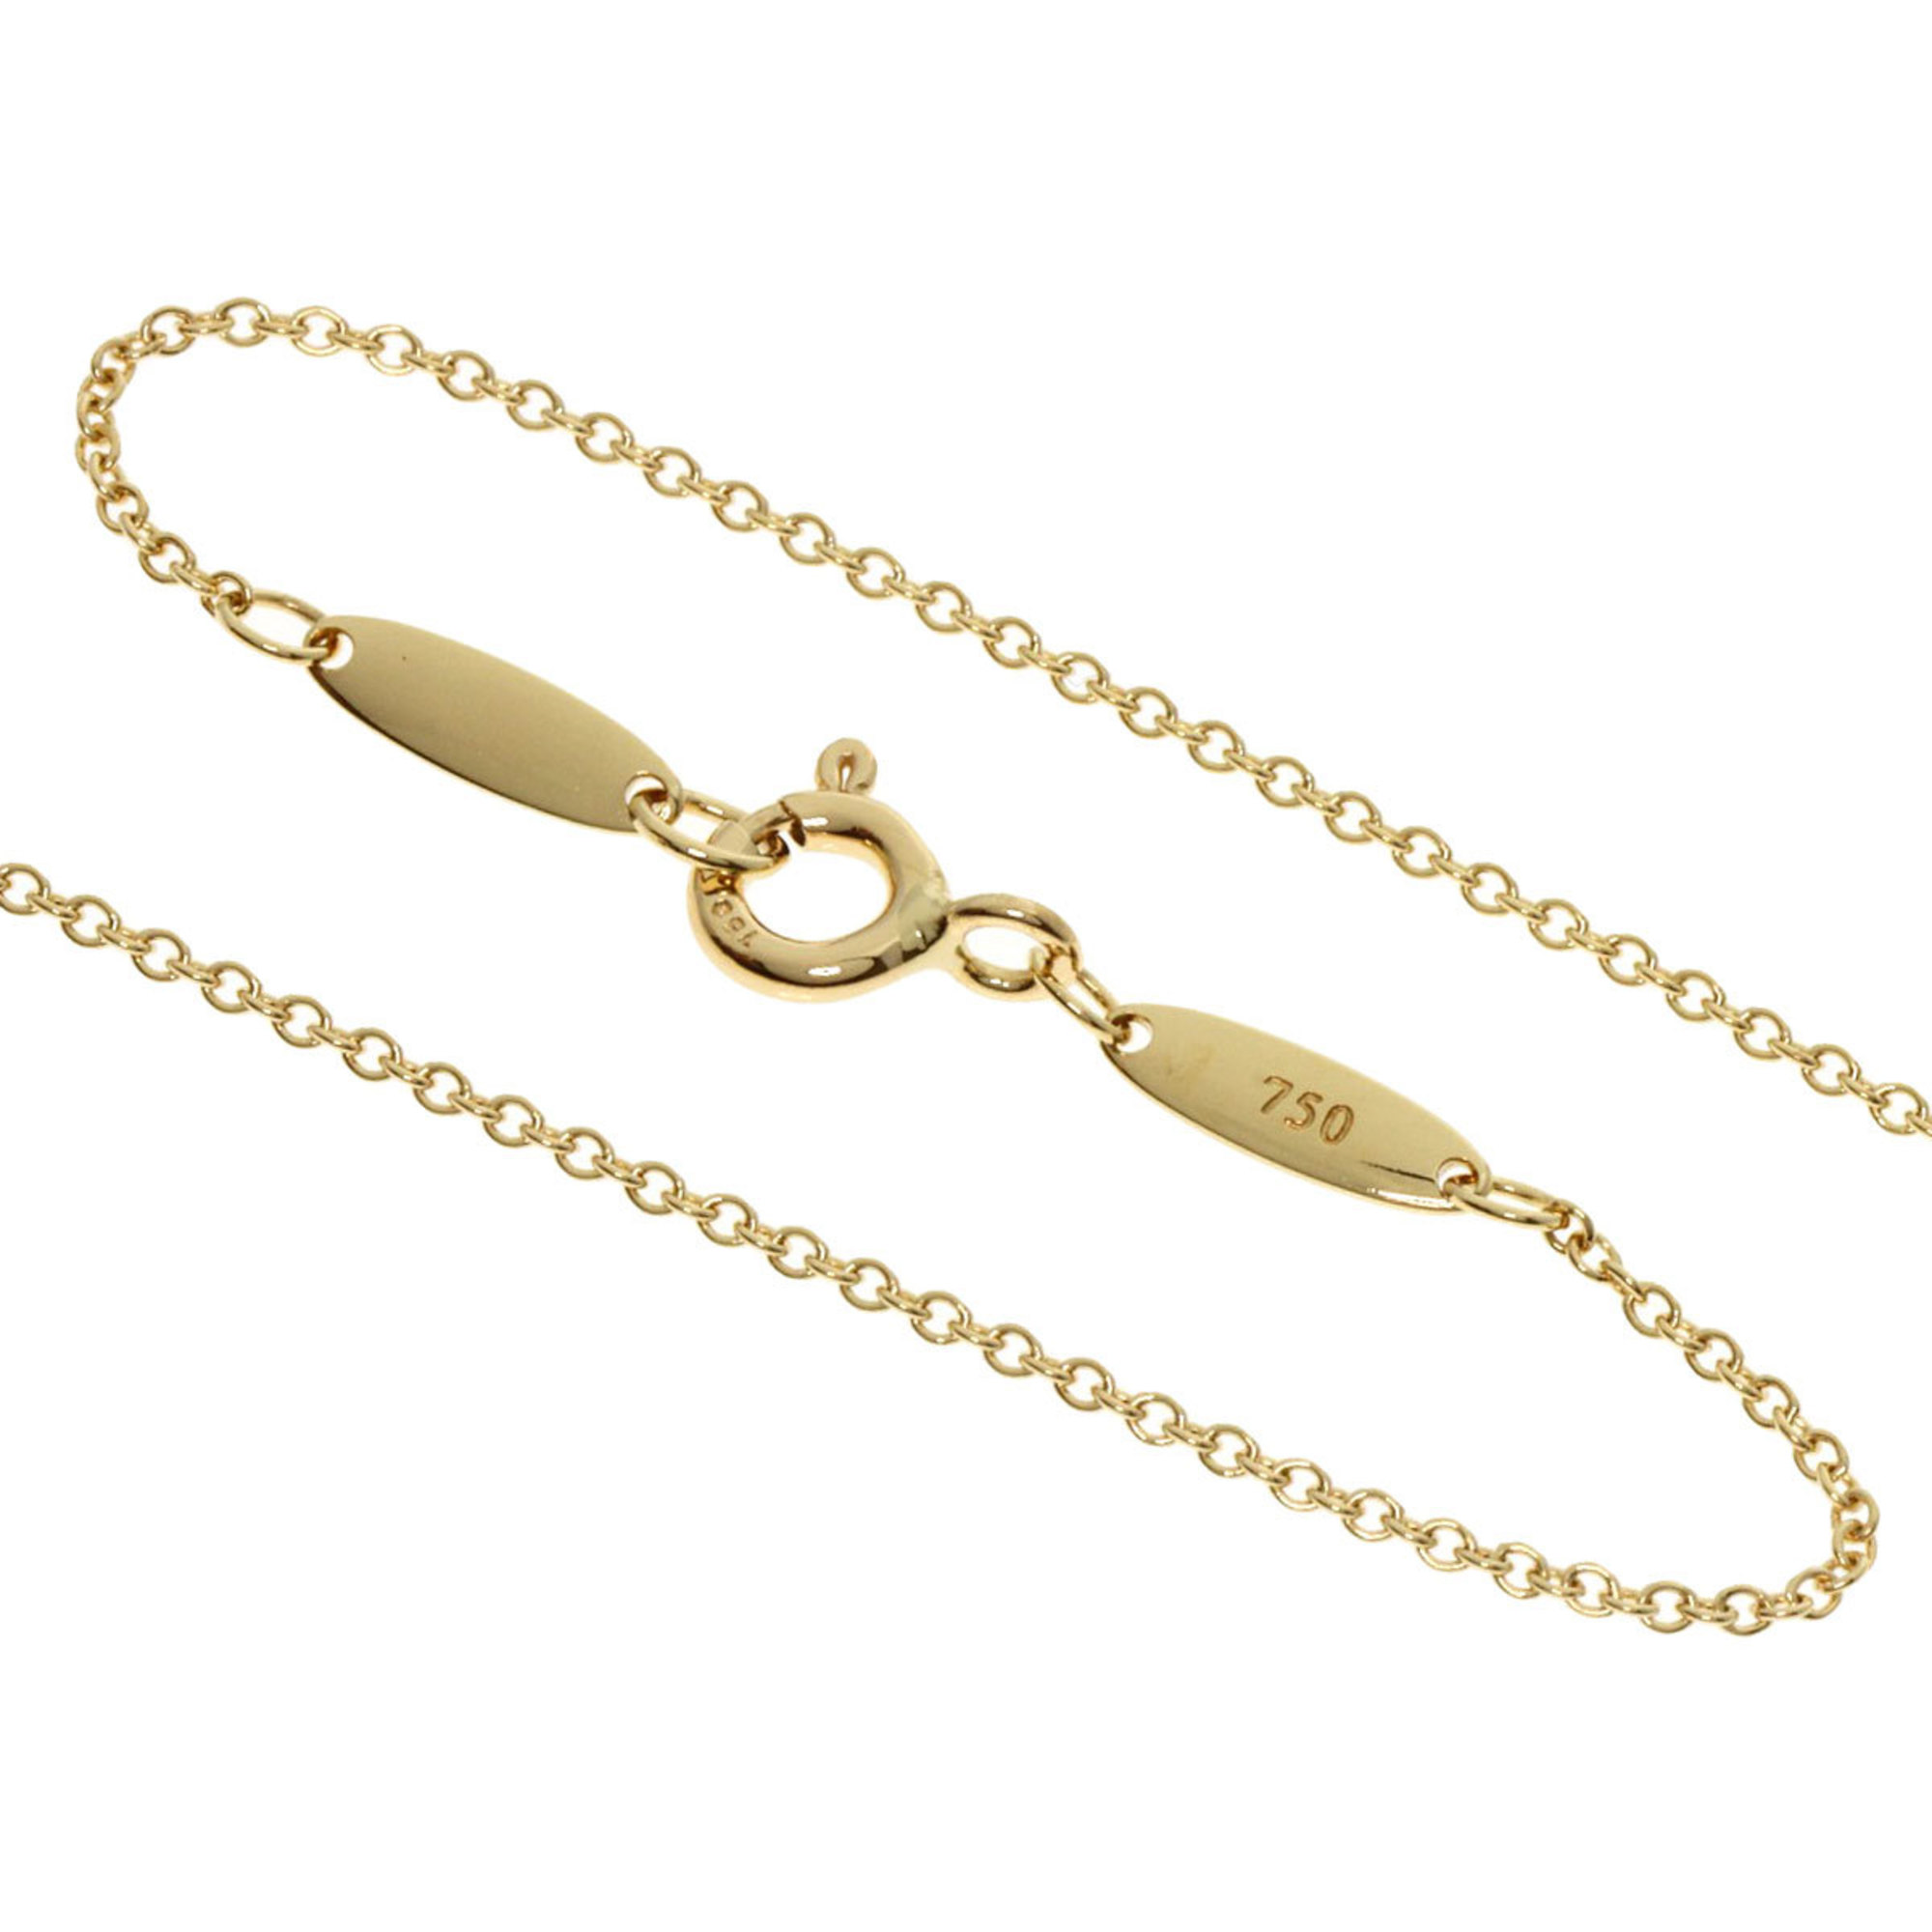 Tiffany Small Cross Necklace K18 Yellow Gold Women's TIFFANY&Co.